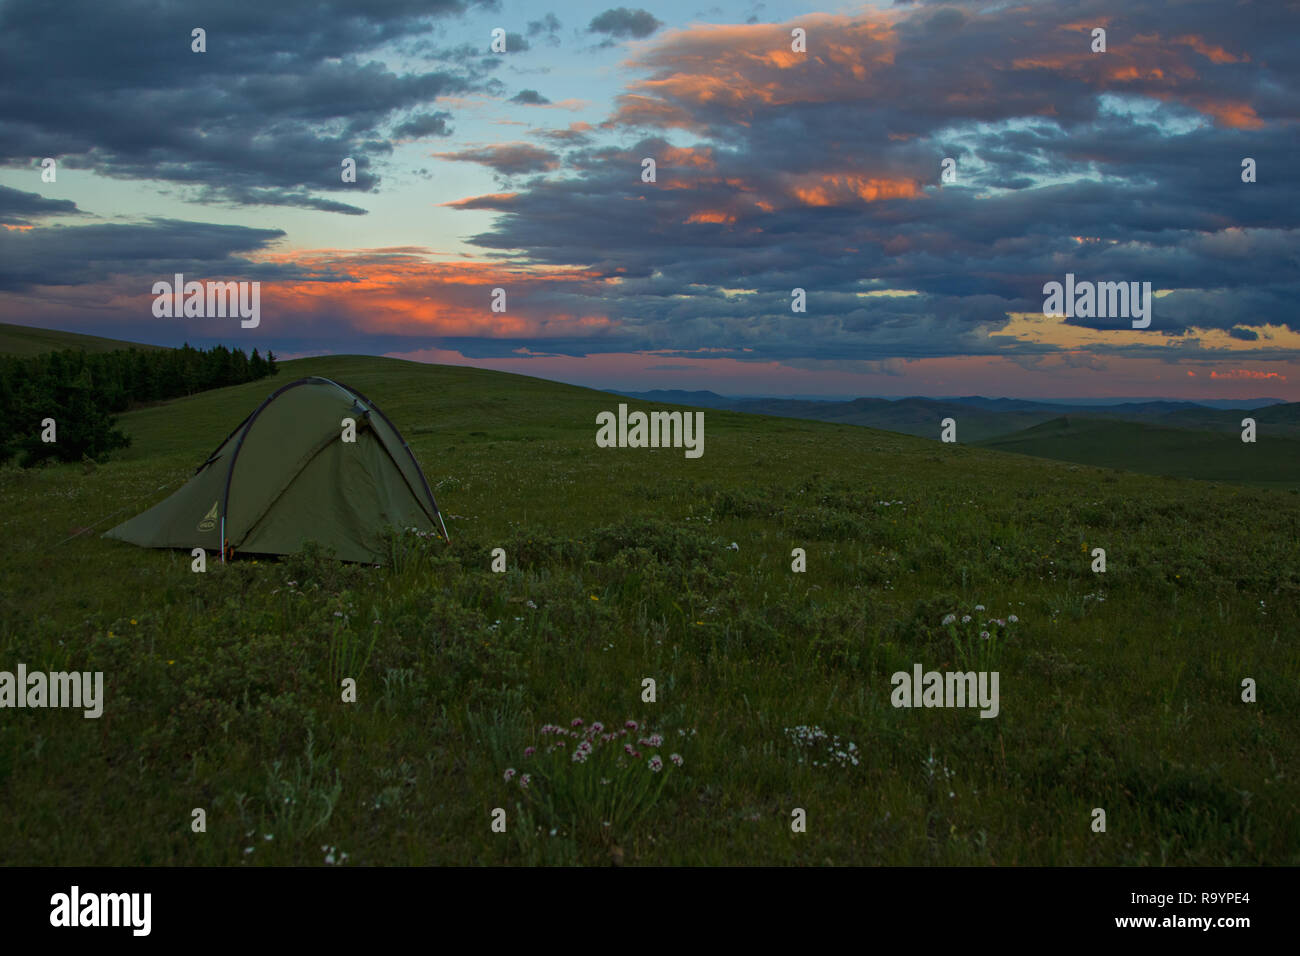 Camping avec tente solitaire en steppe mongole campagne sur la crête de la montagne, Khan Khentii, Mongolie Banque D'Images